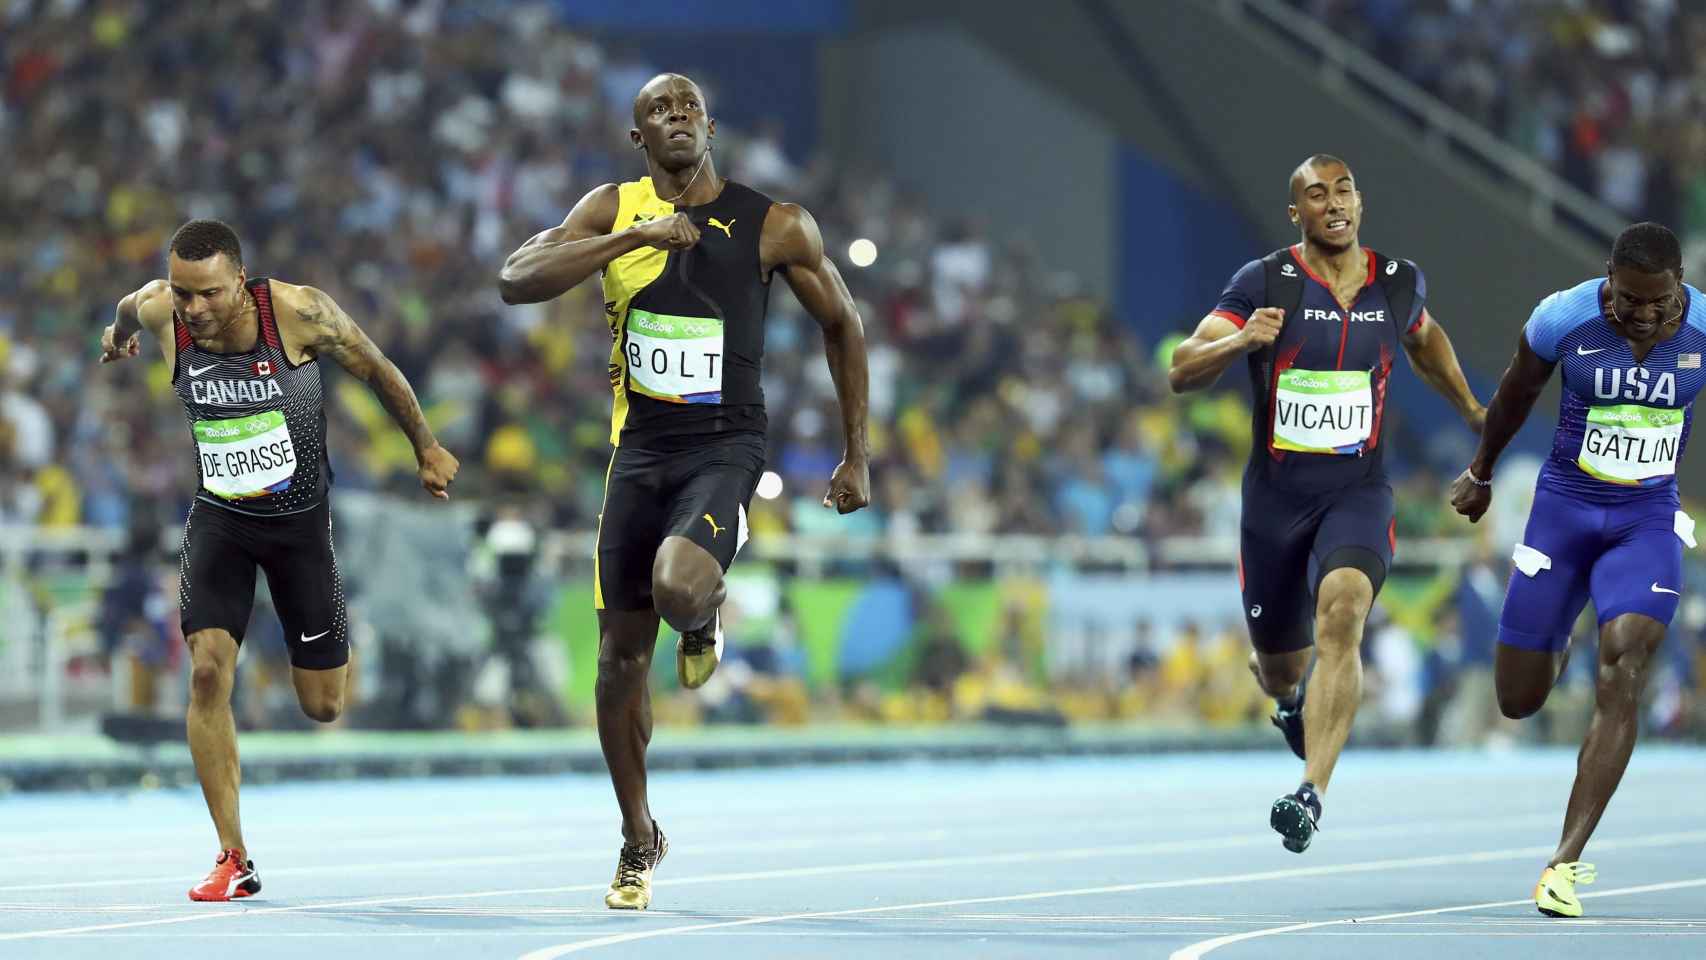 Momento de la carrera en la que Bolt ha vuelto a ganar los 100 metros.